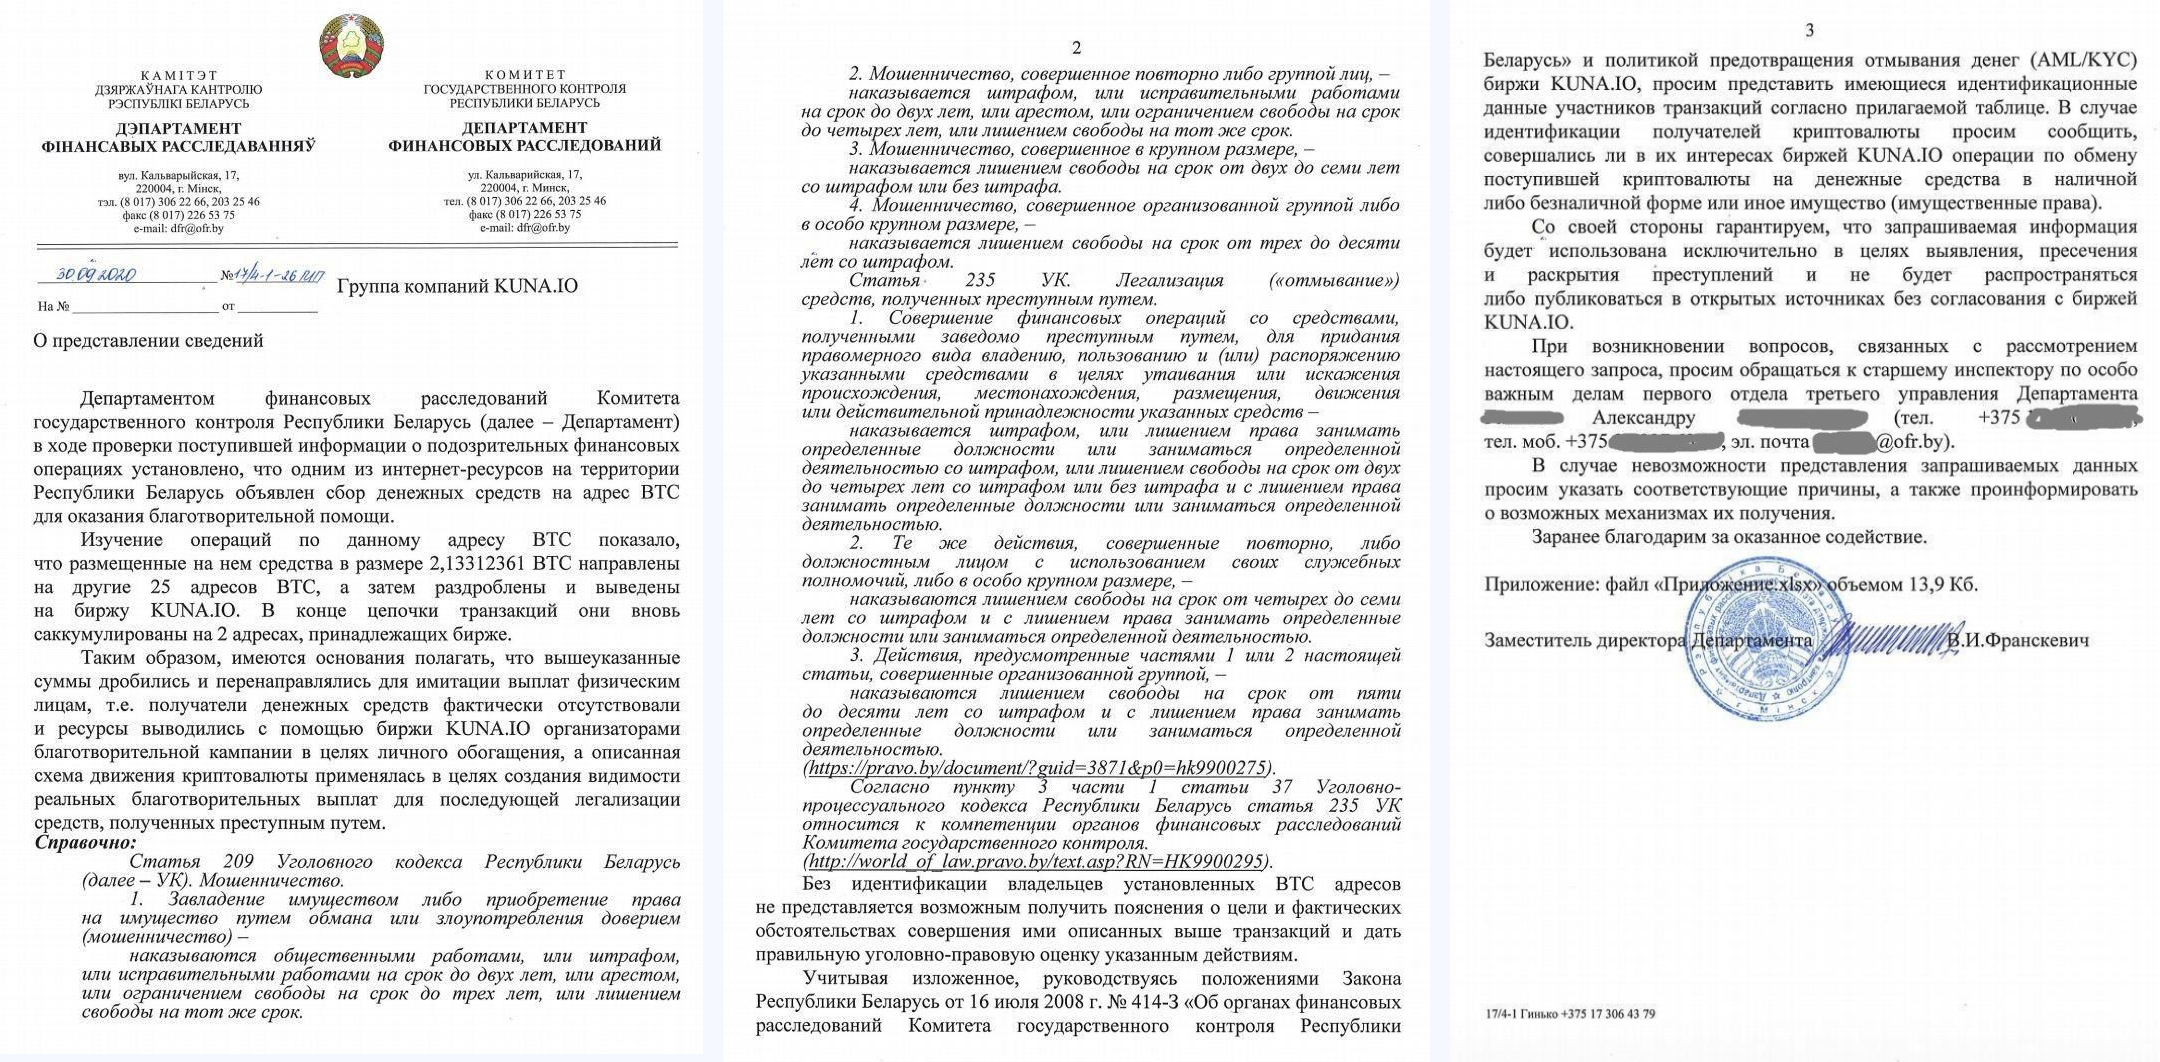 Kuna отказалась «сливать» властям Беларуси информацию о фонде, выплачивающем биткоины